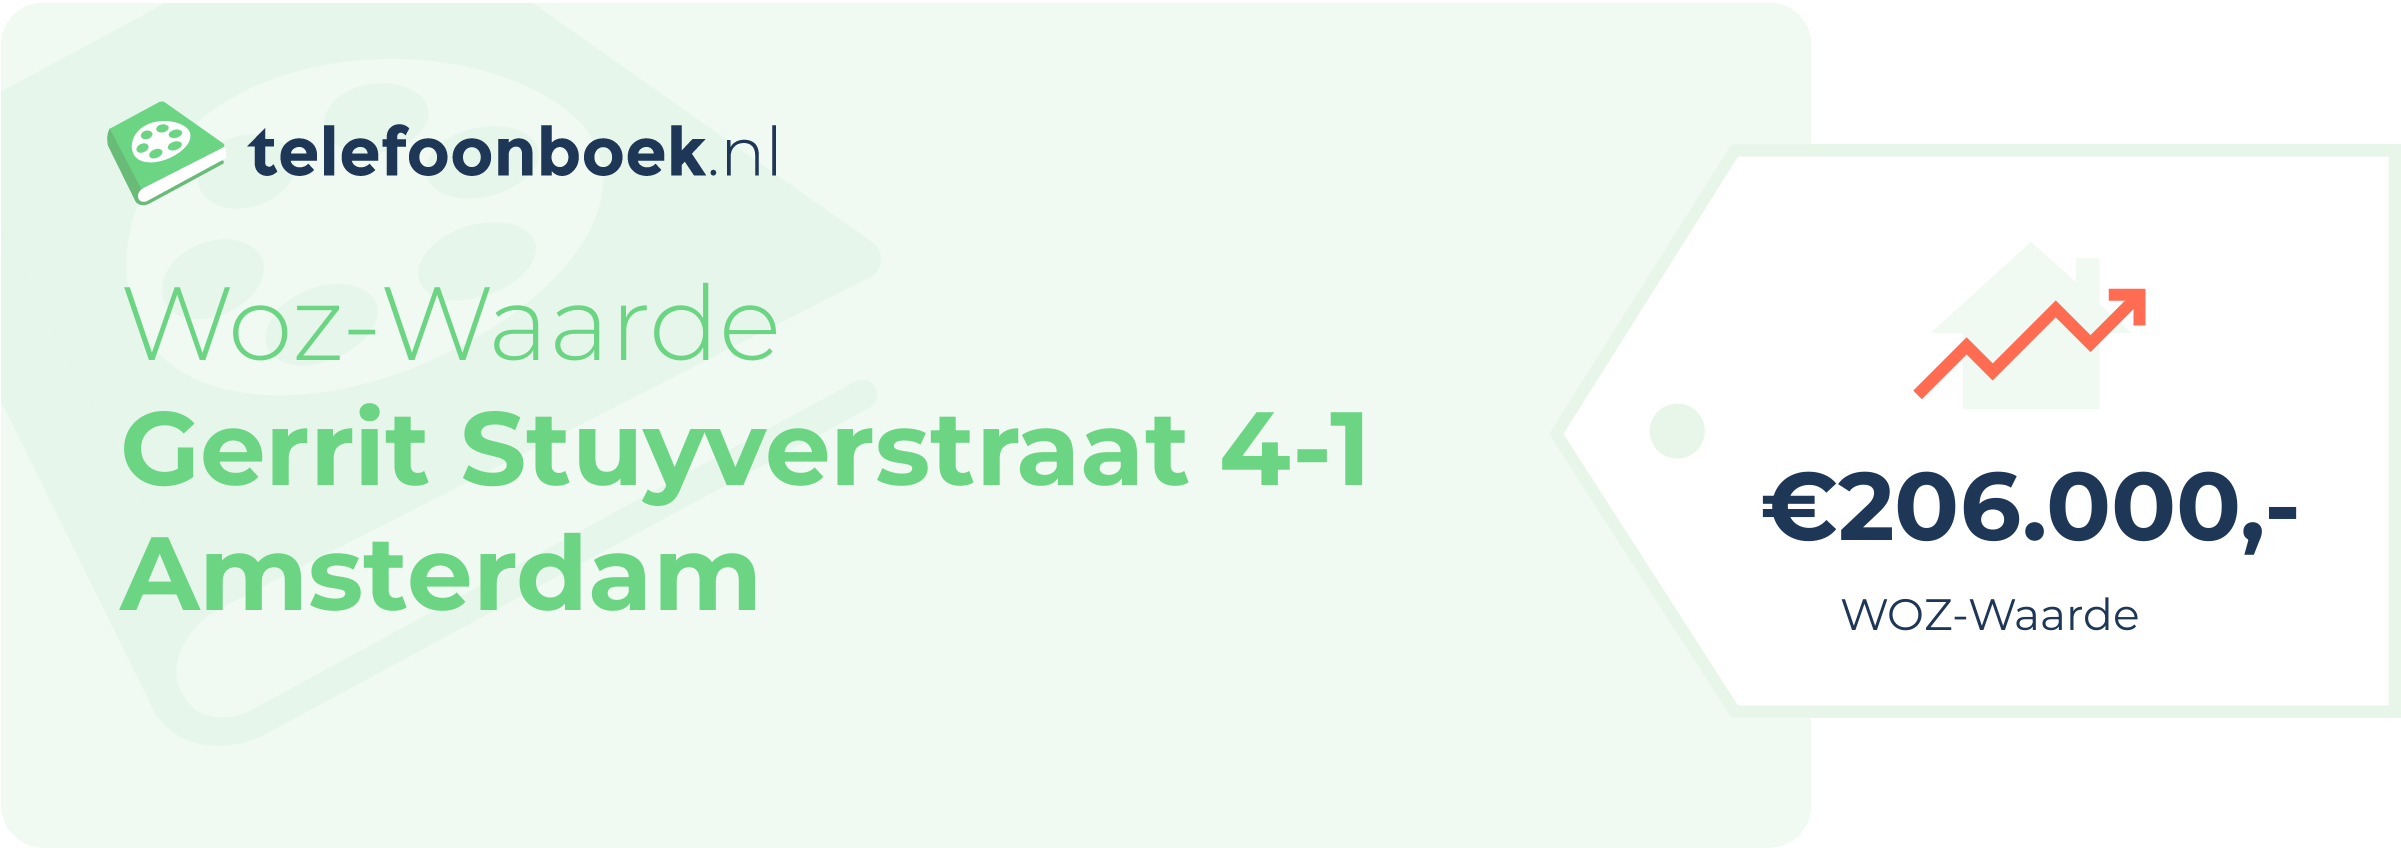 WOZ-waarde Gerrit Stuyverstraat 4-1 Amsterdam